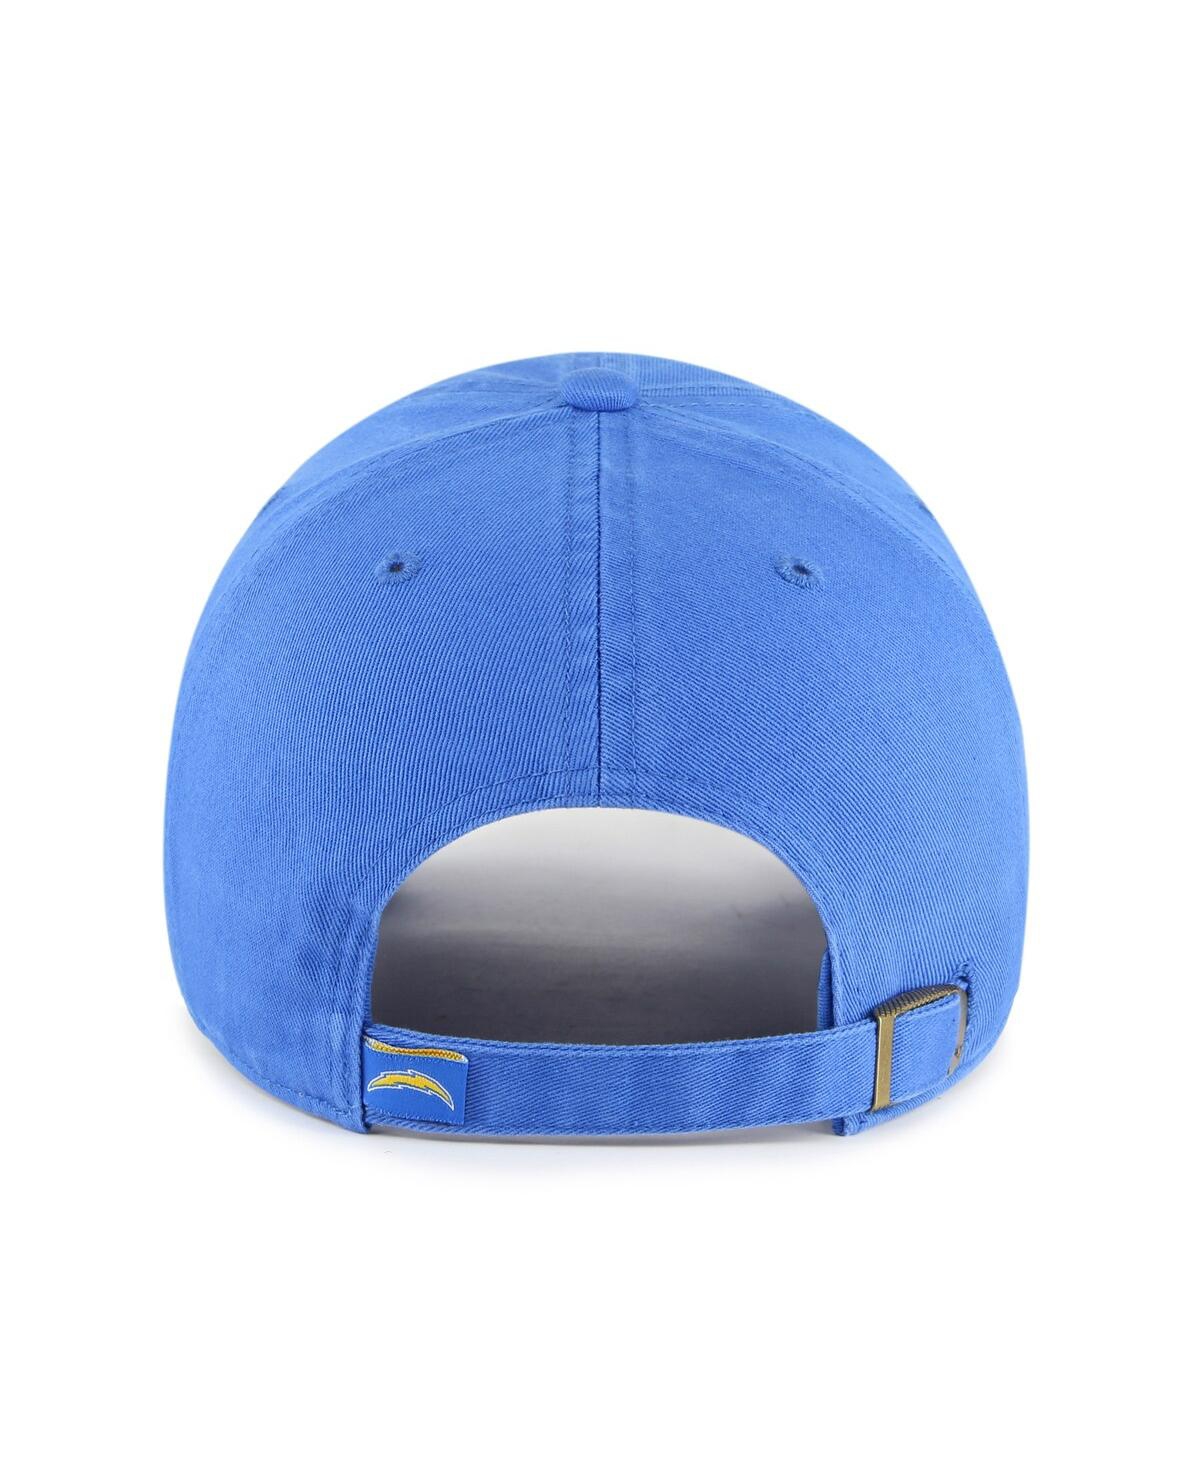 Shop 47 Brand Men's '47 Powder Blue Los Angeles Chargers Clean Up Script Adjustable Hat